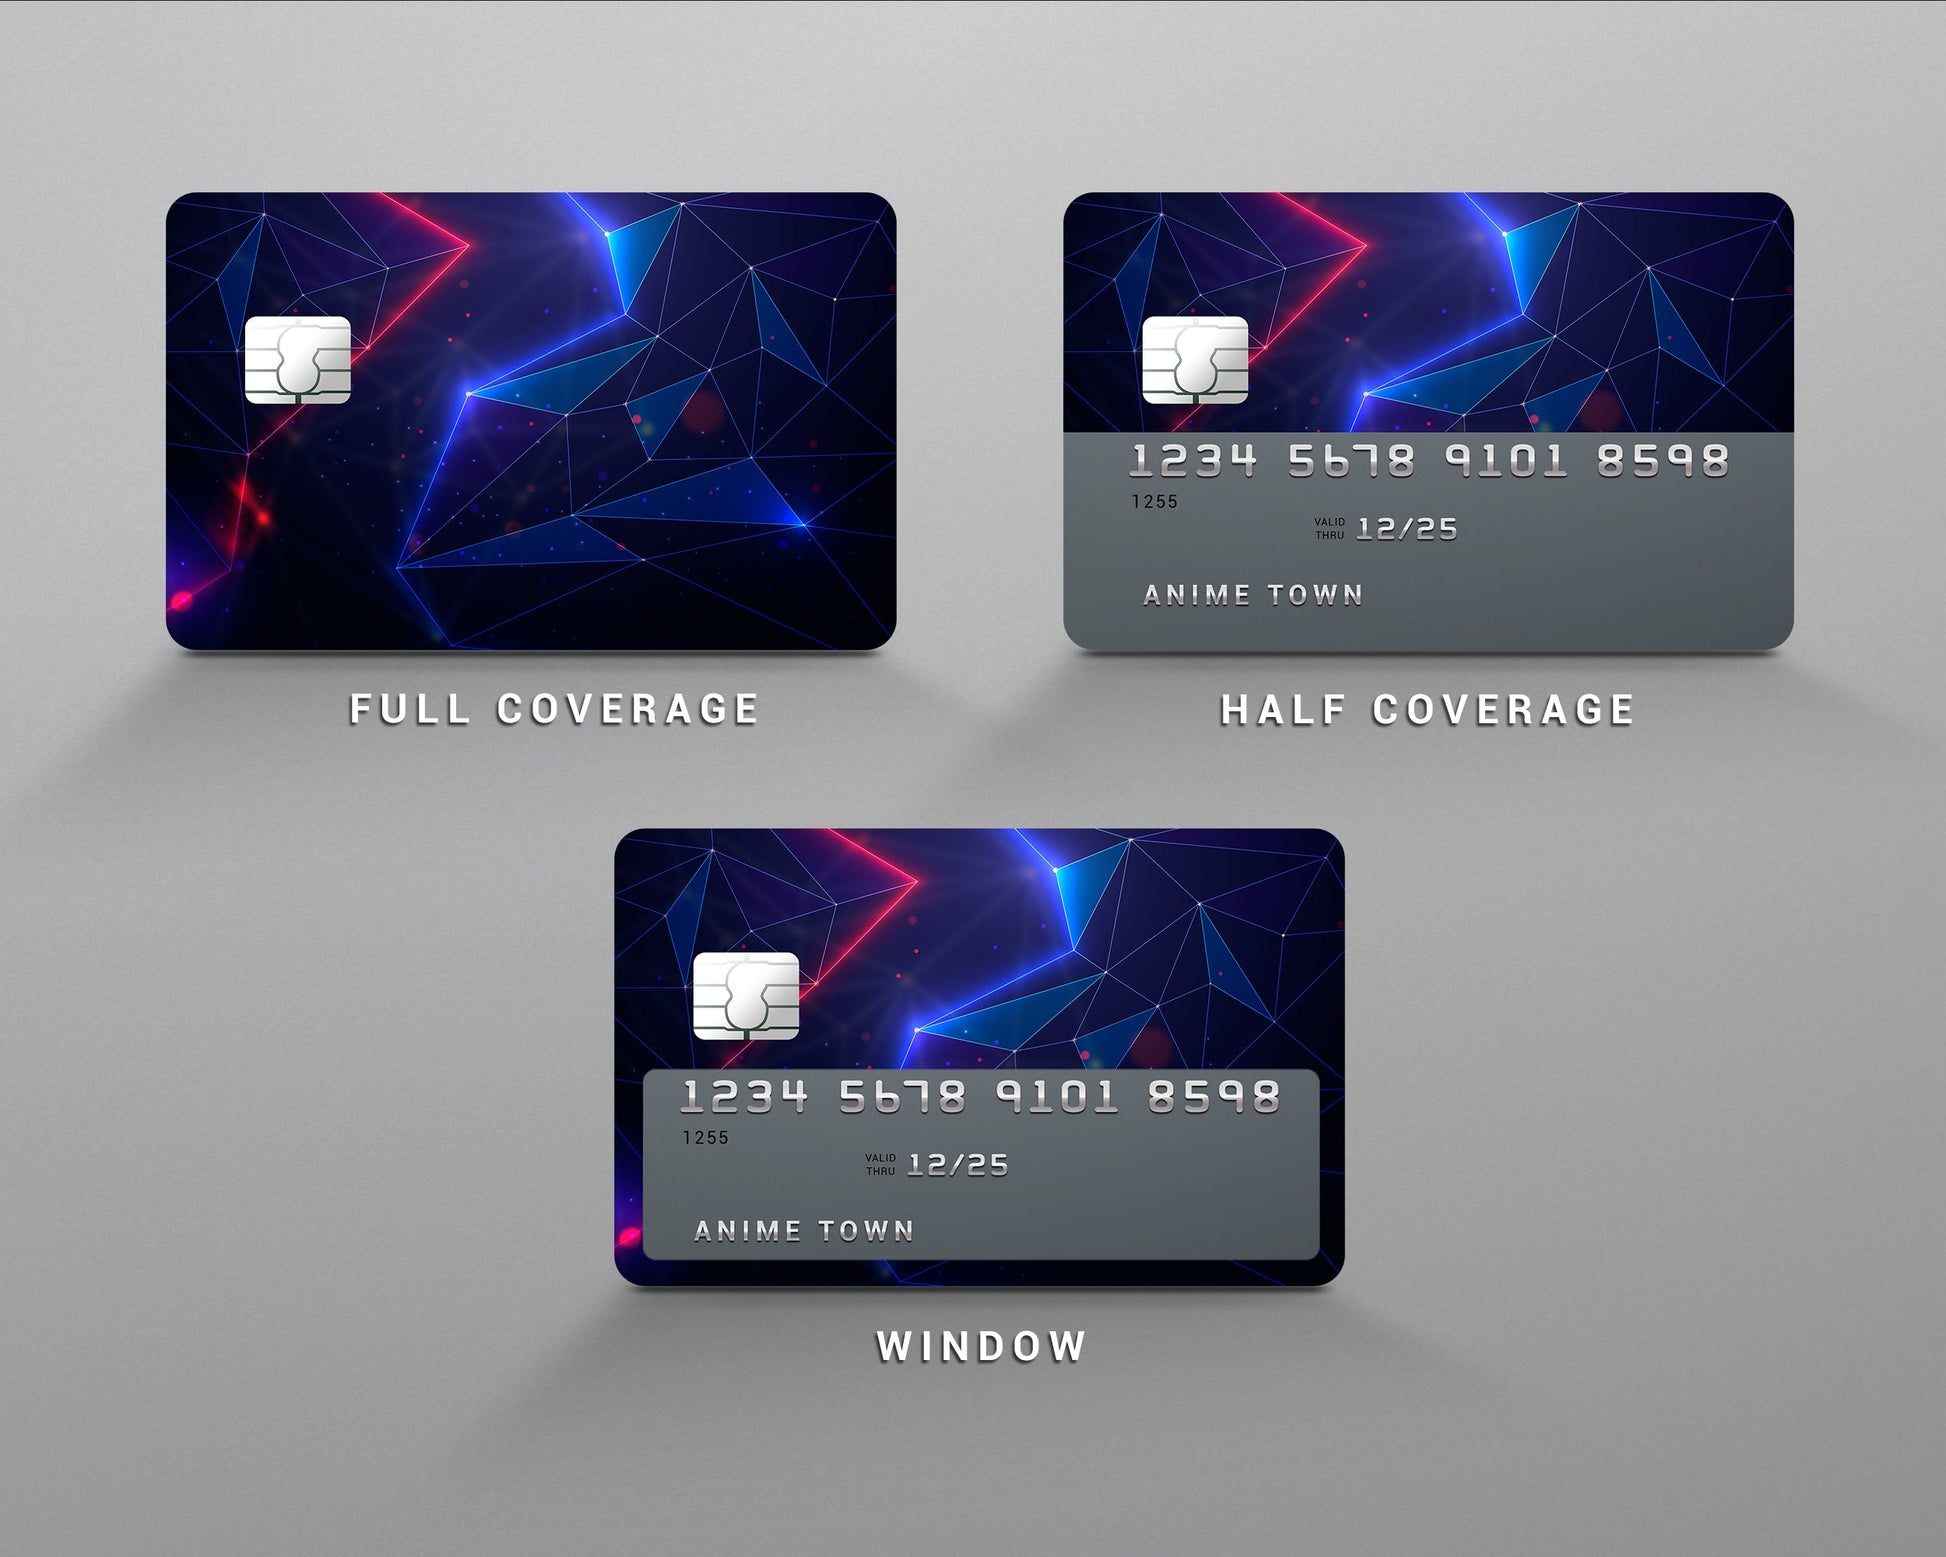 Holographic UNO Debit/Credit Card Sticker Skin/Cover (4)